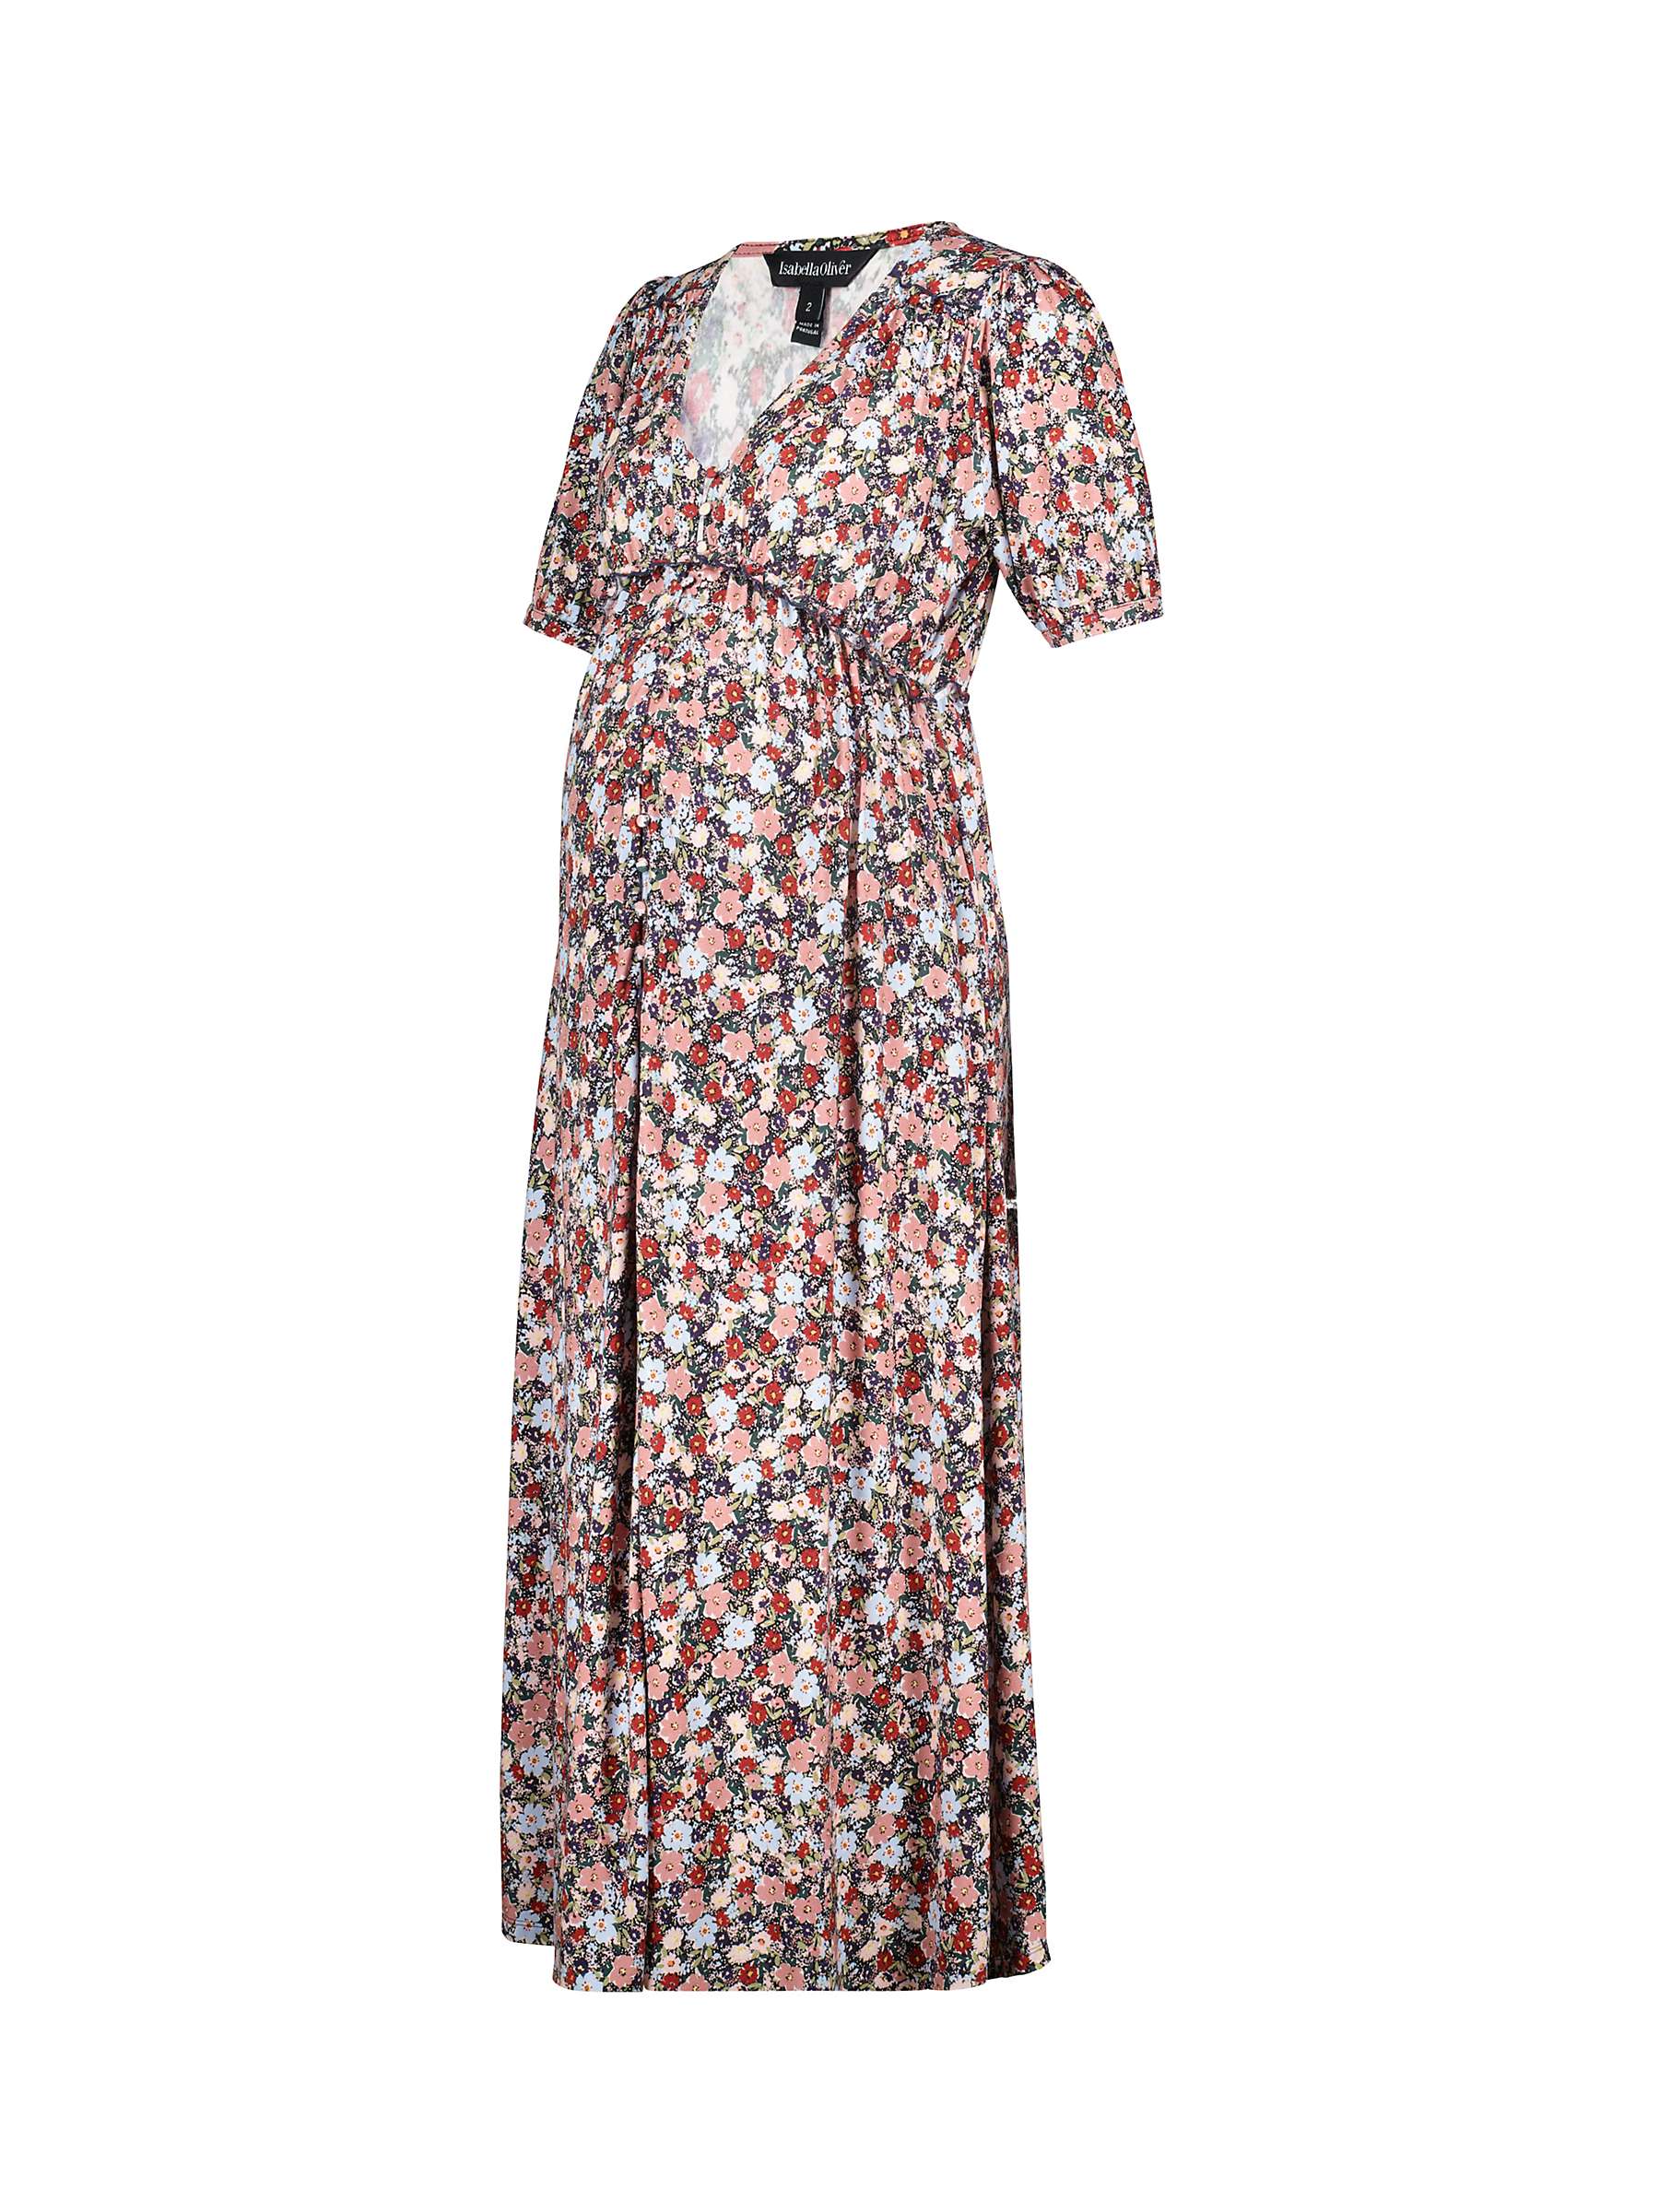 Buy Isabella Oliver Ivona Floral Jersey Maternity Dress, Blue/Multi Online at johnlewis.com